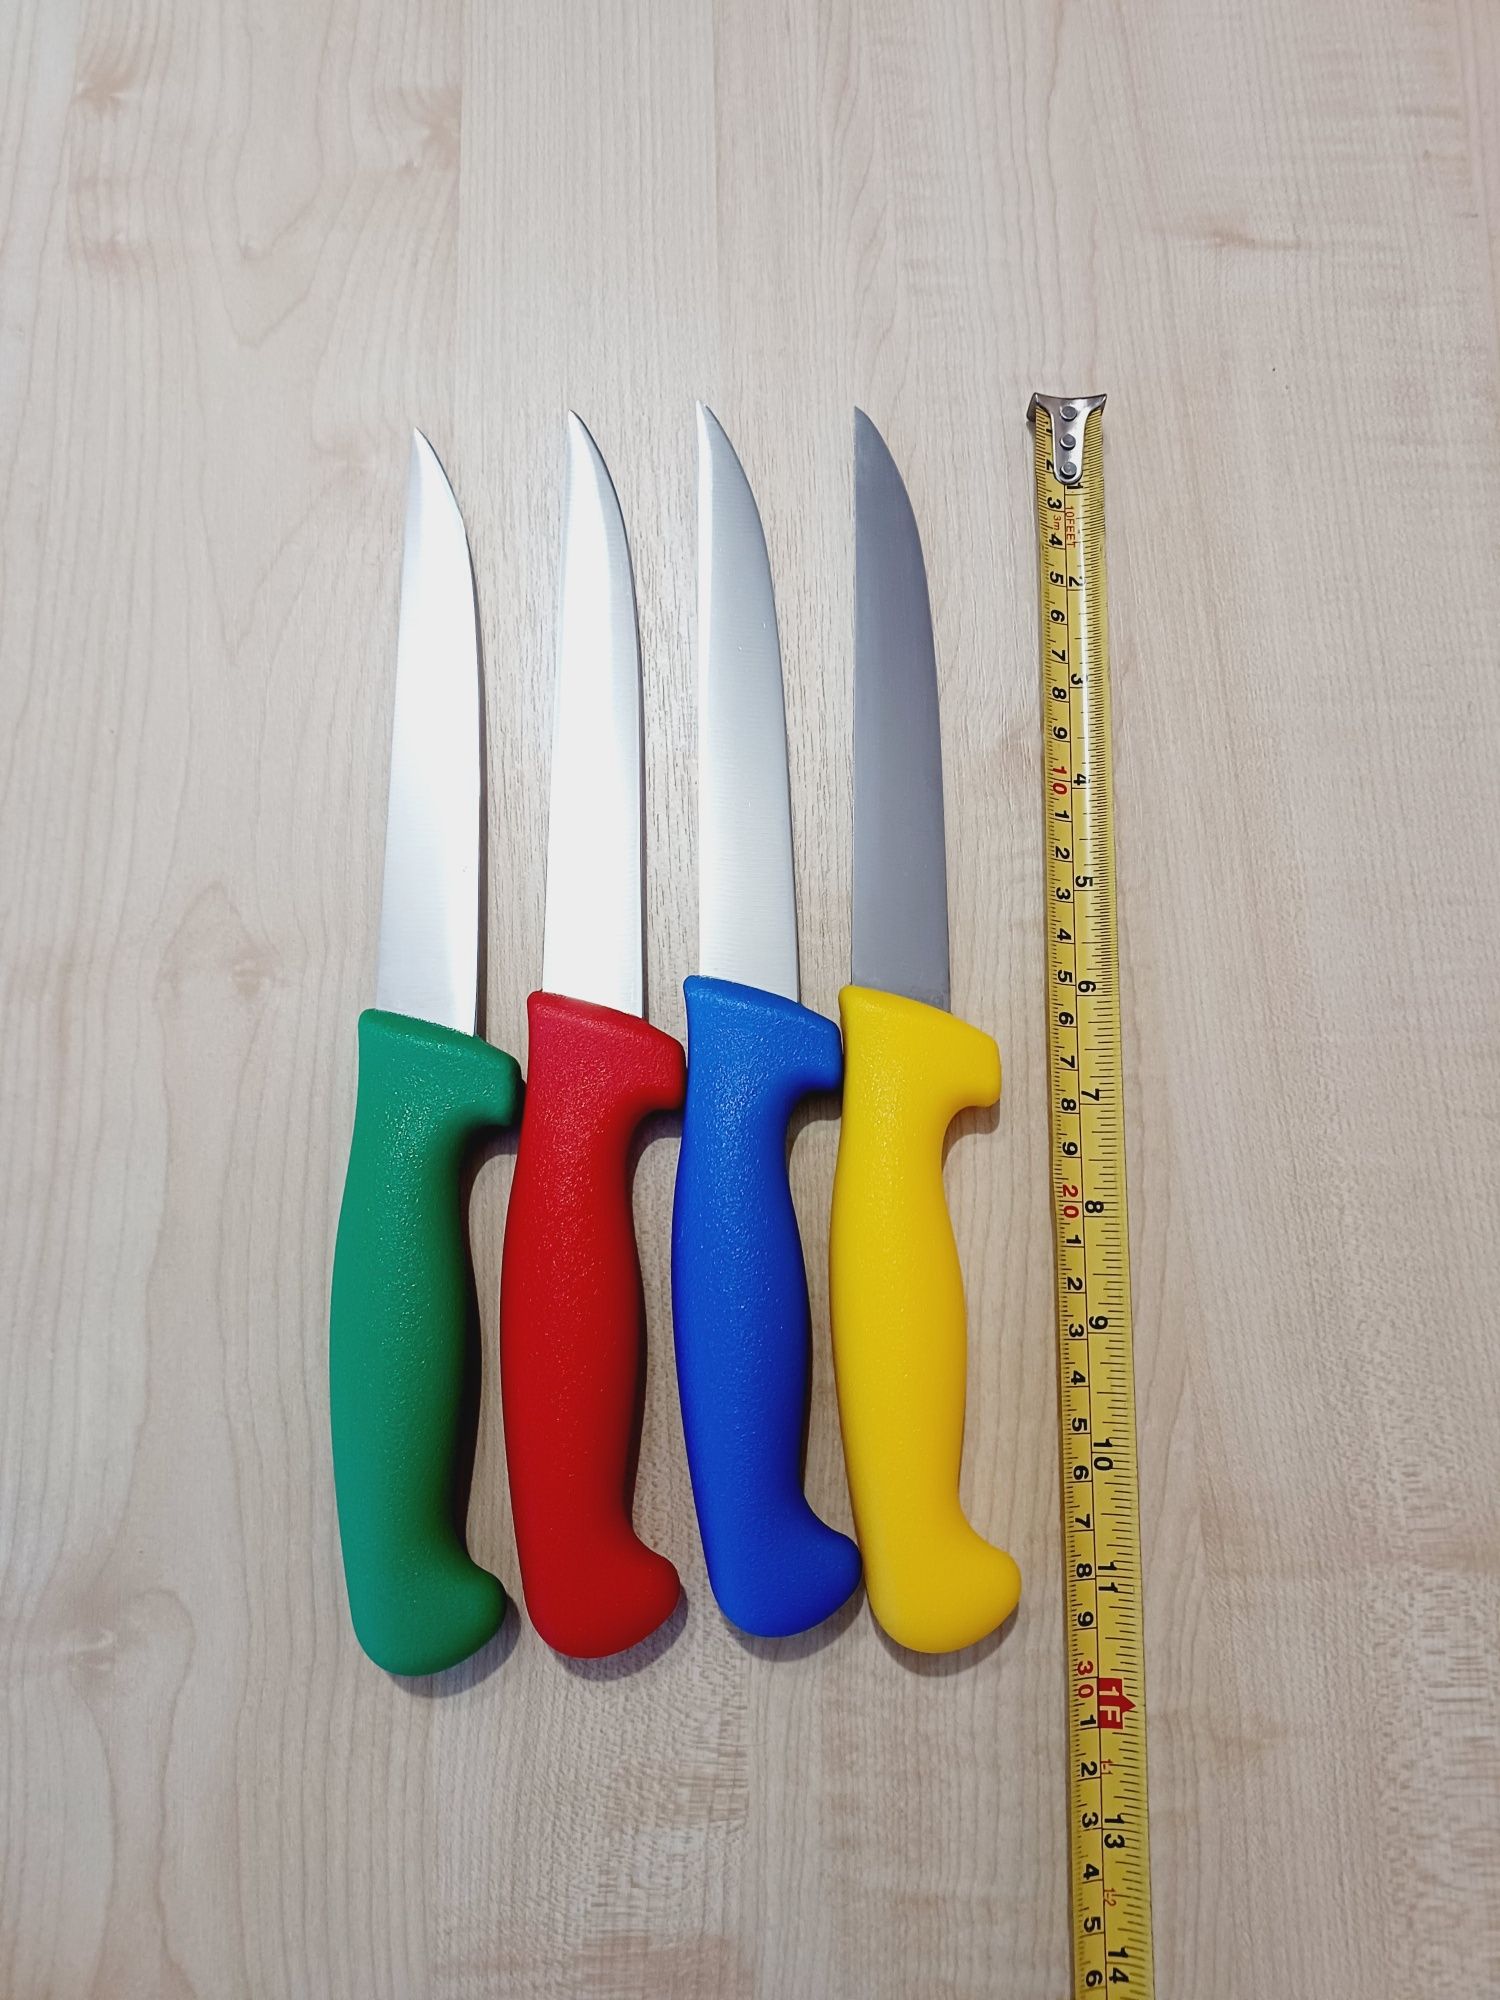 Професійні ножі для м’яса та шаурми хорошої якості